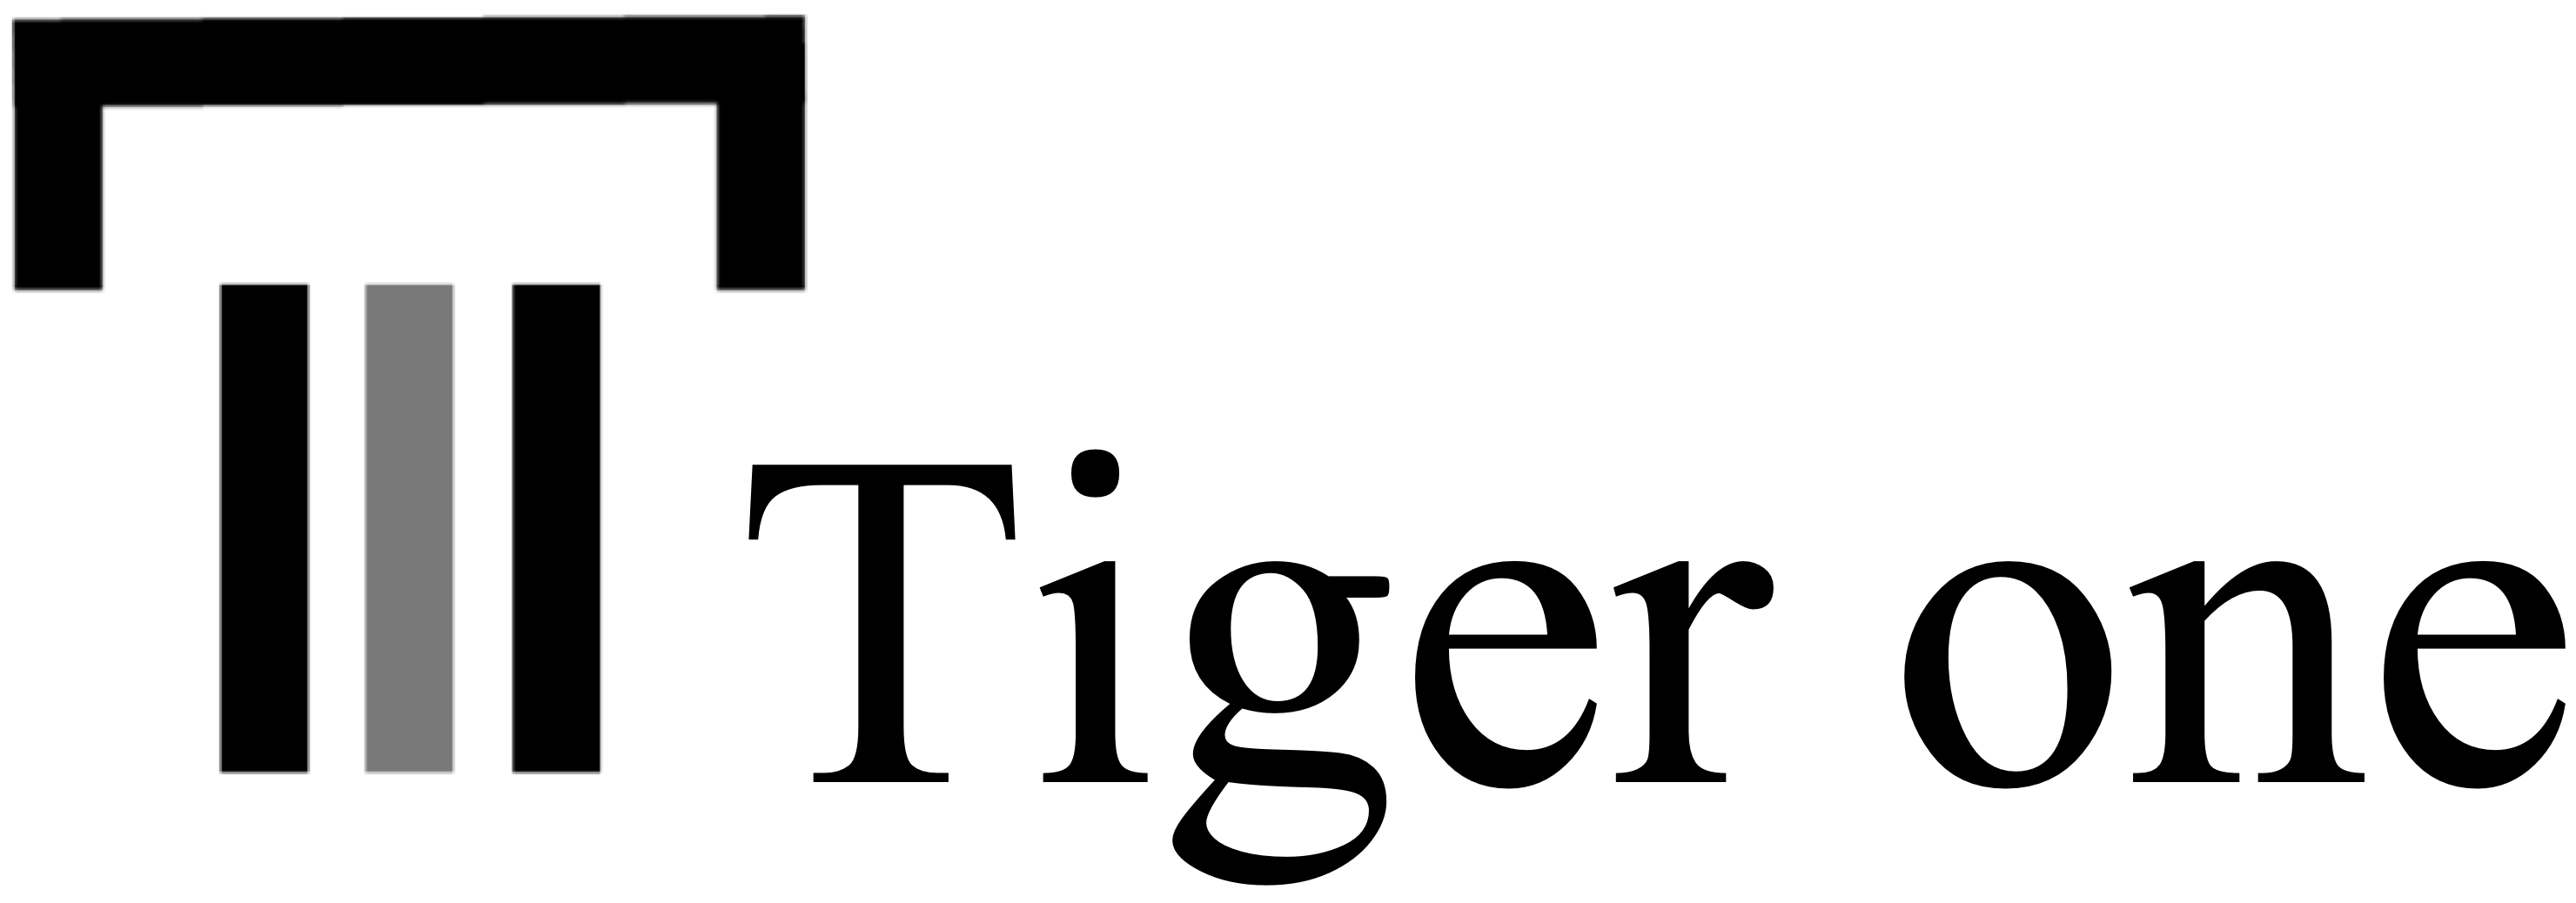 株式会社Tiger one